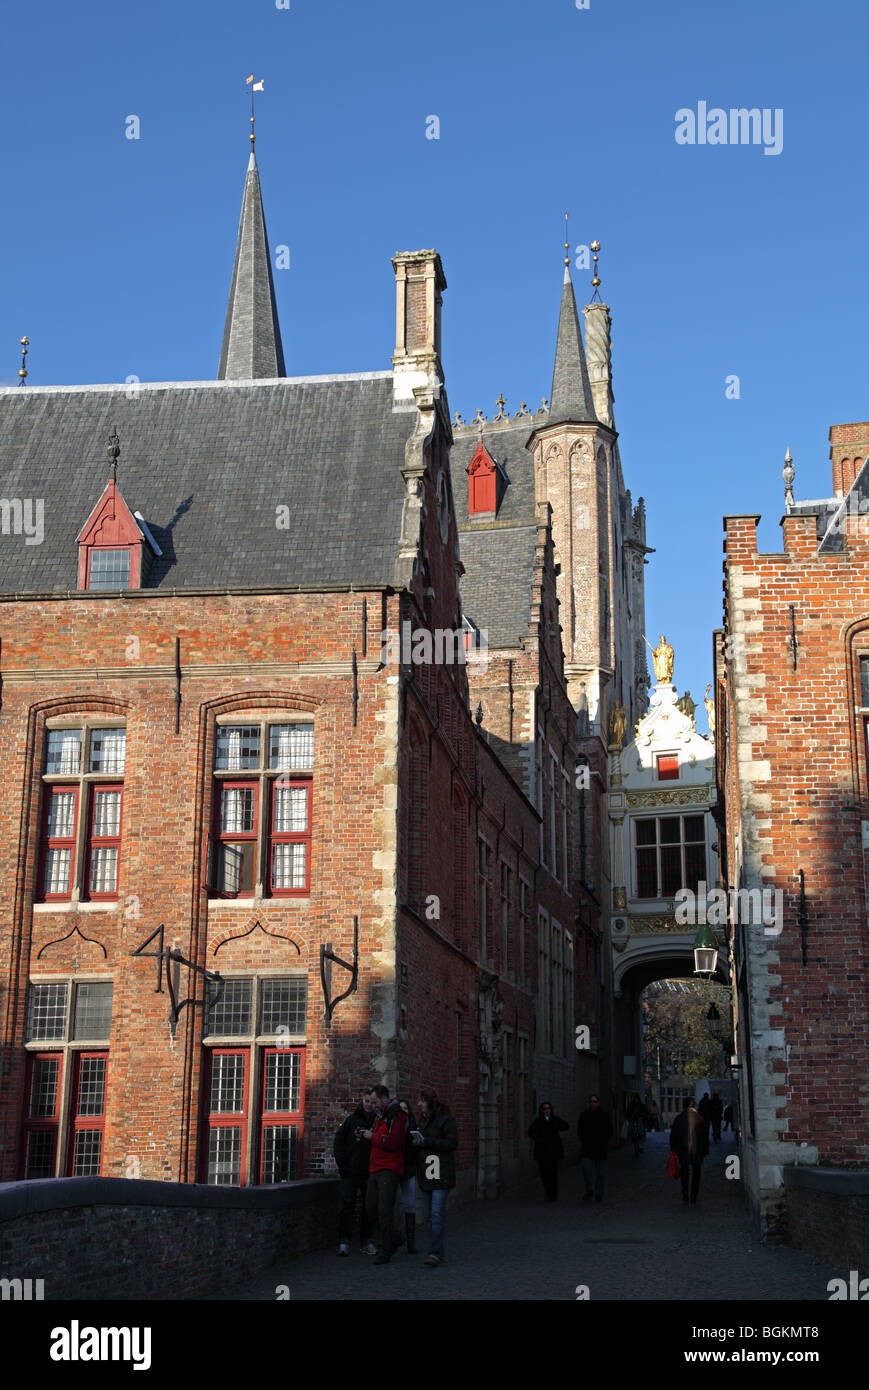 Blind Donkey Street or Blinde Ezelstraat at Bruges Stock Photo